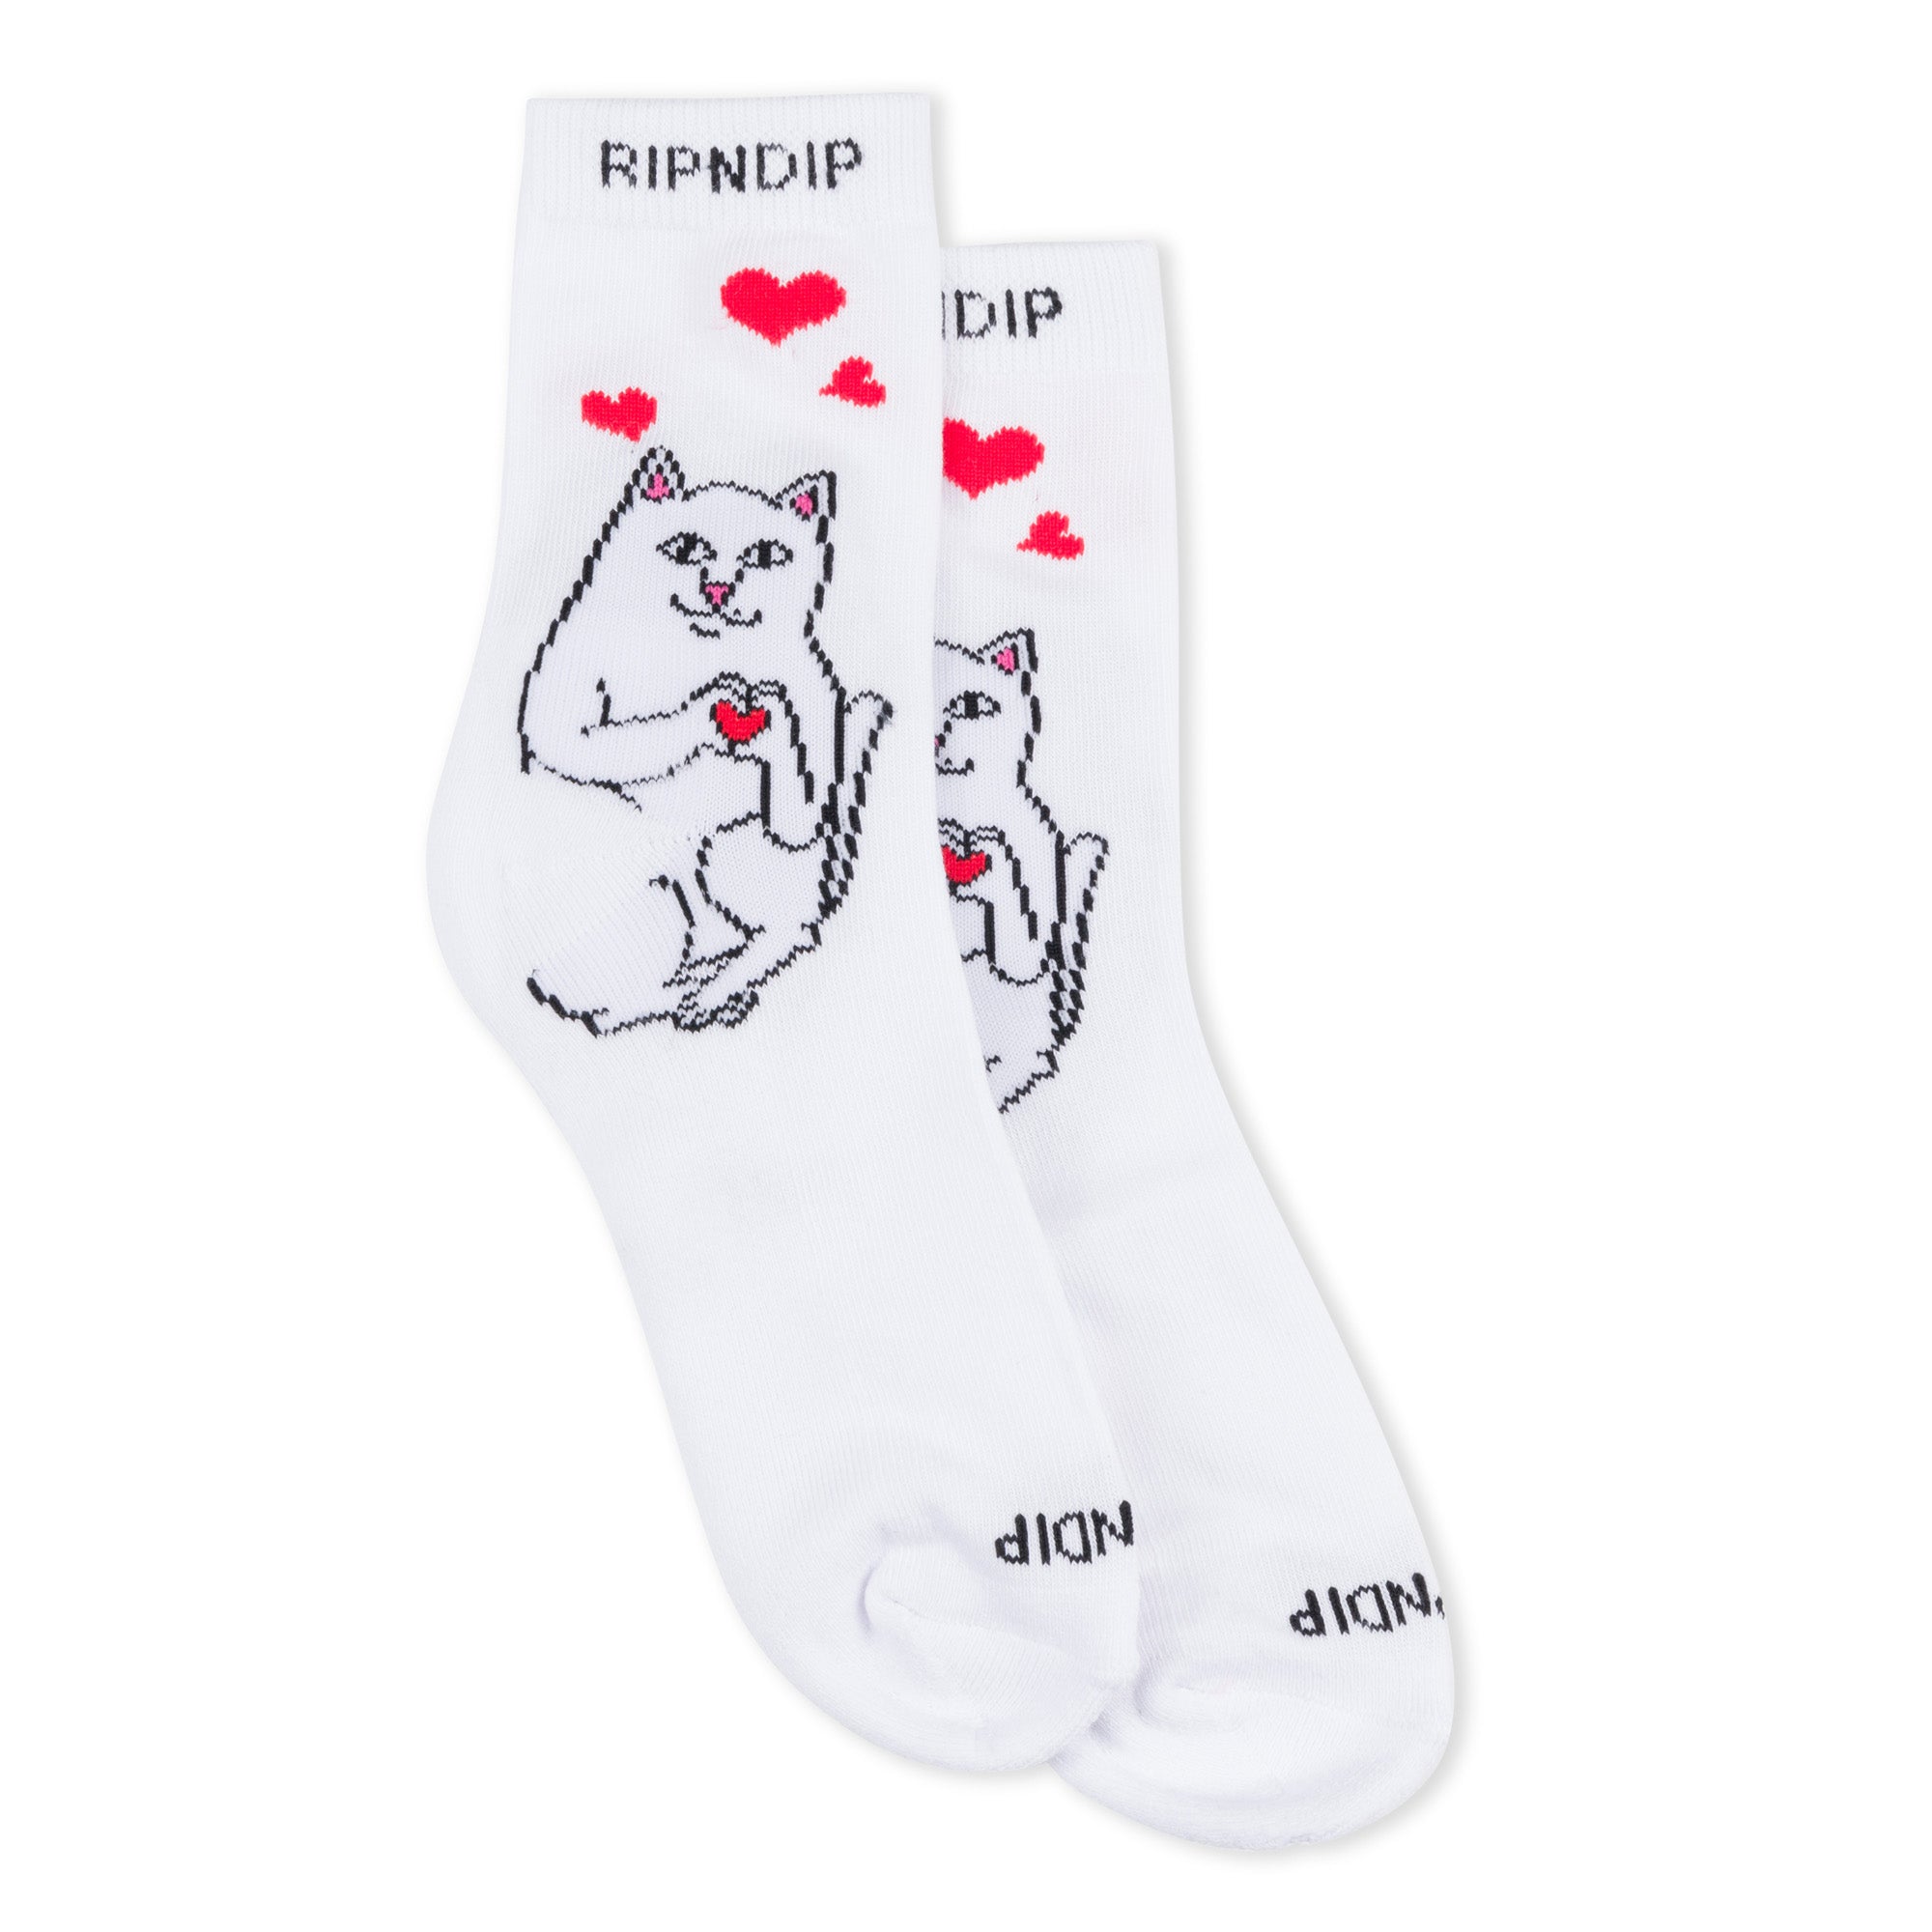 Nermal Loves Mid Socks (White)